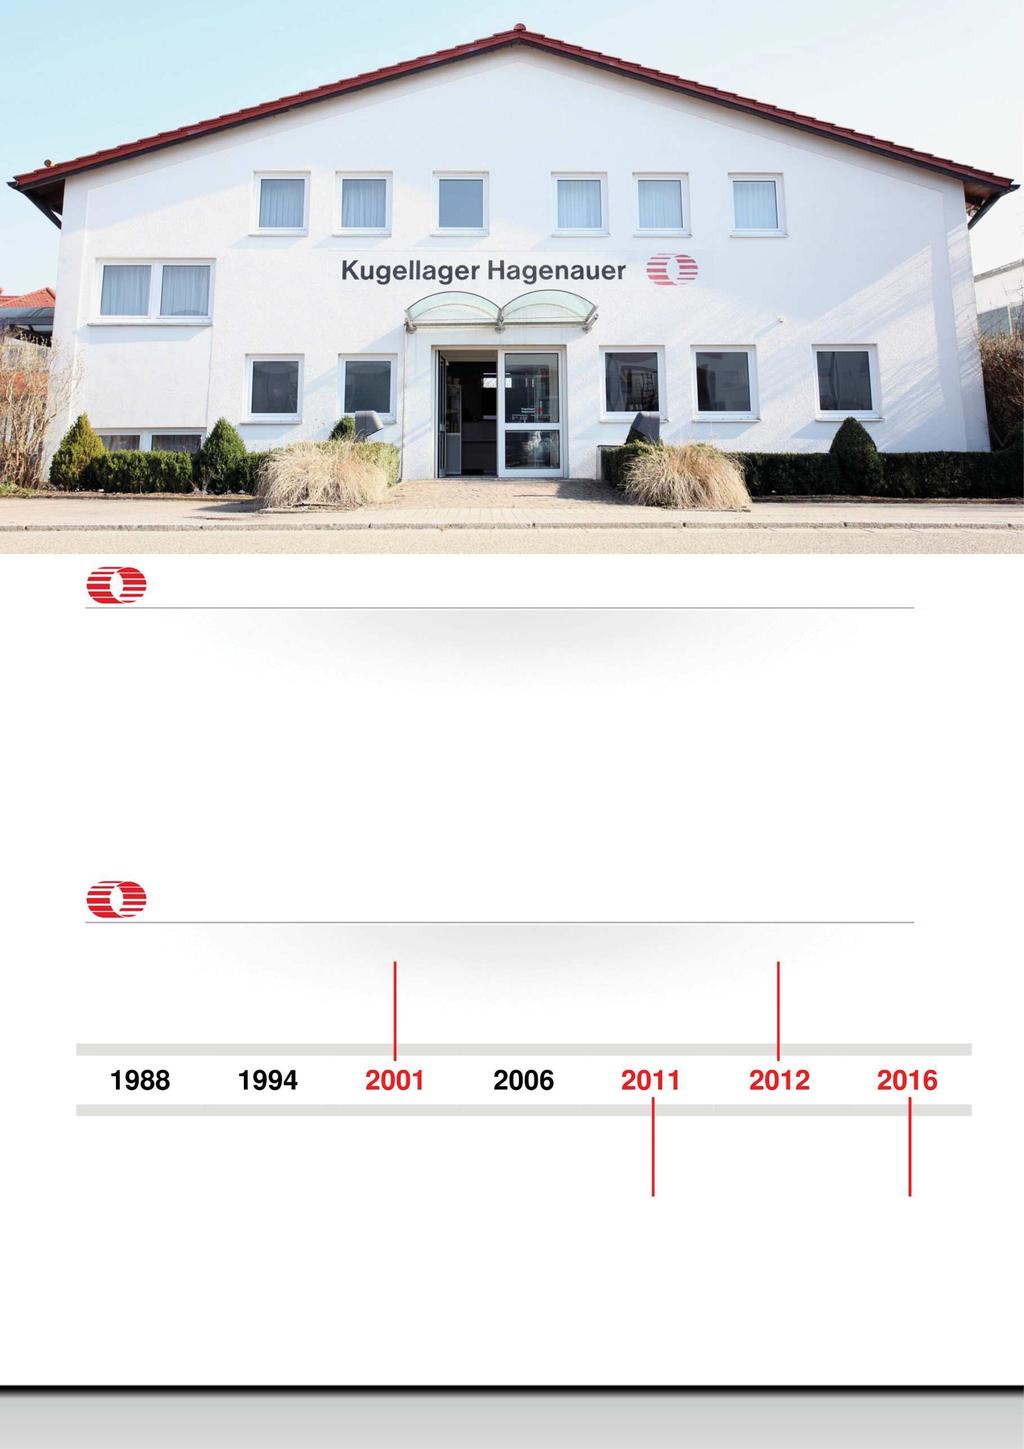 Willkommen bei Kugellager Hagenauer Über 25 Jahre Erfahrung im Gebiet der Wälzlager- und Antriebstechnik machen uns zu einem starken Partner.